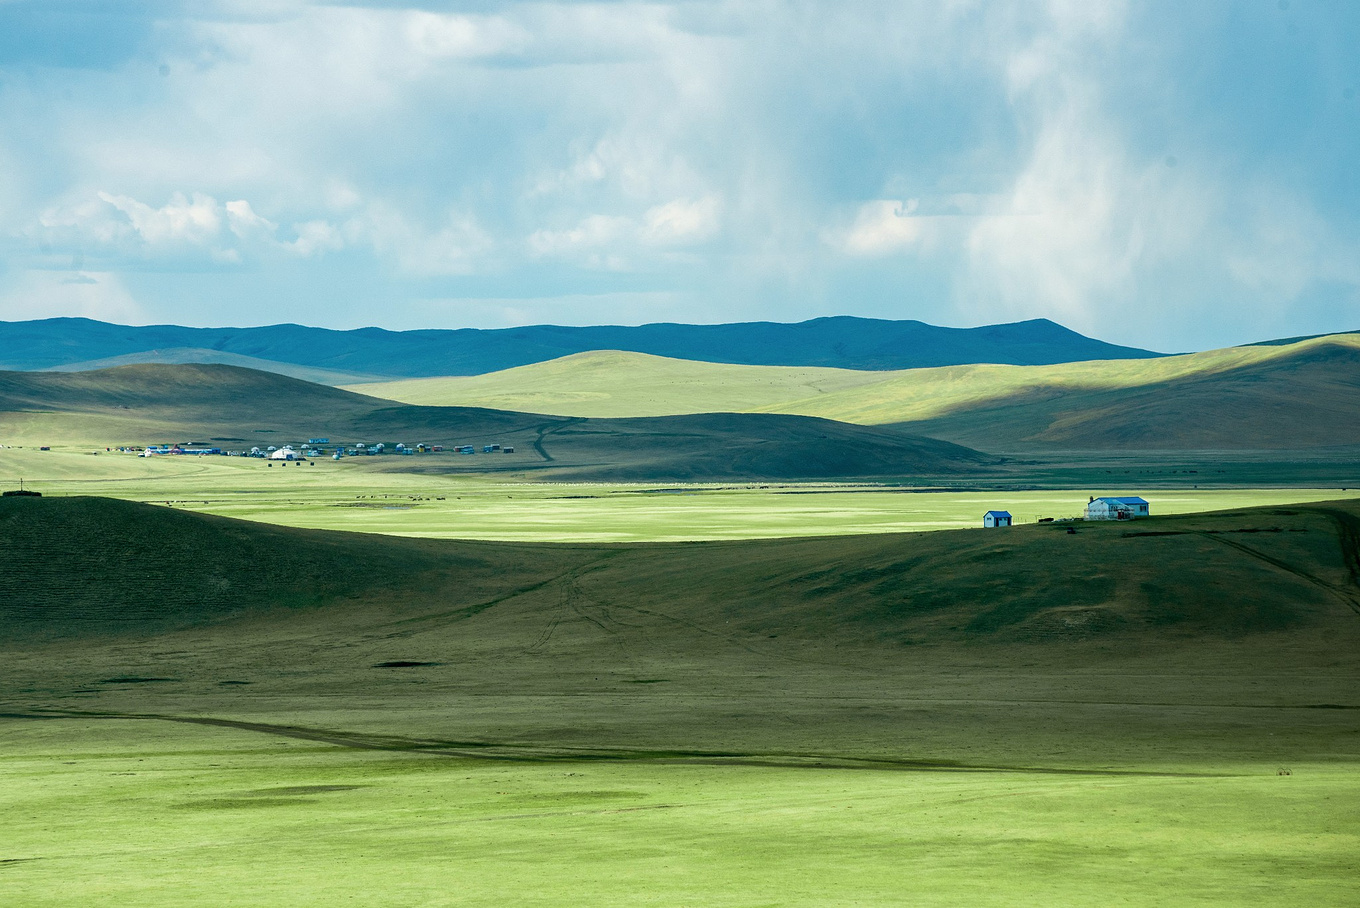 大草原呼伦贝尔图片,内蒙古大草原风景图片 - 伤感说说吧